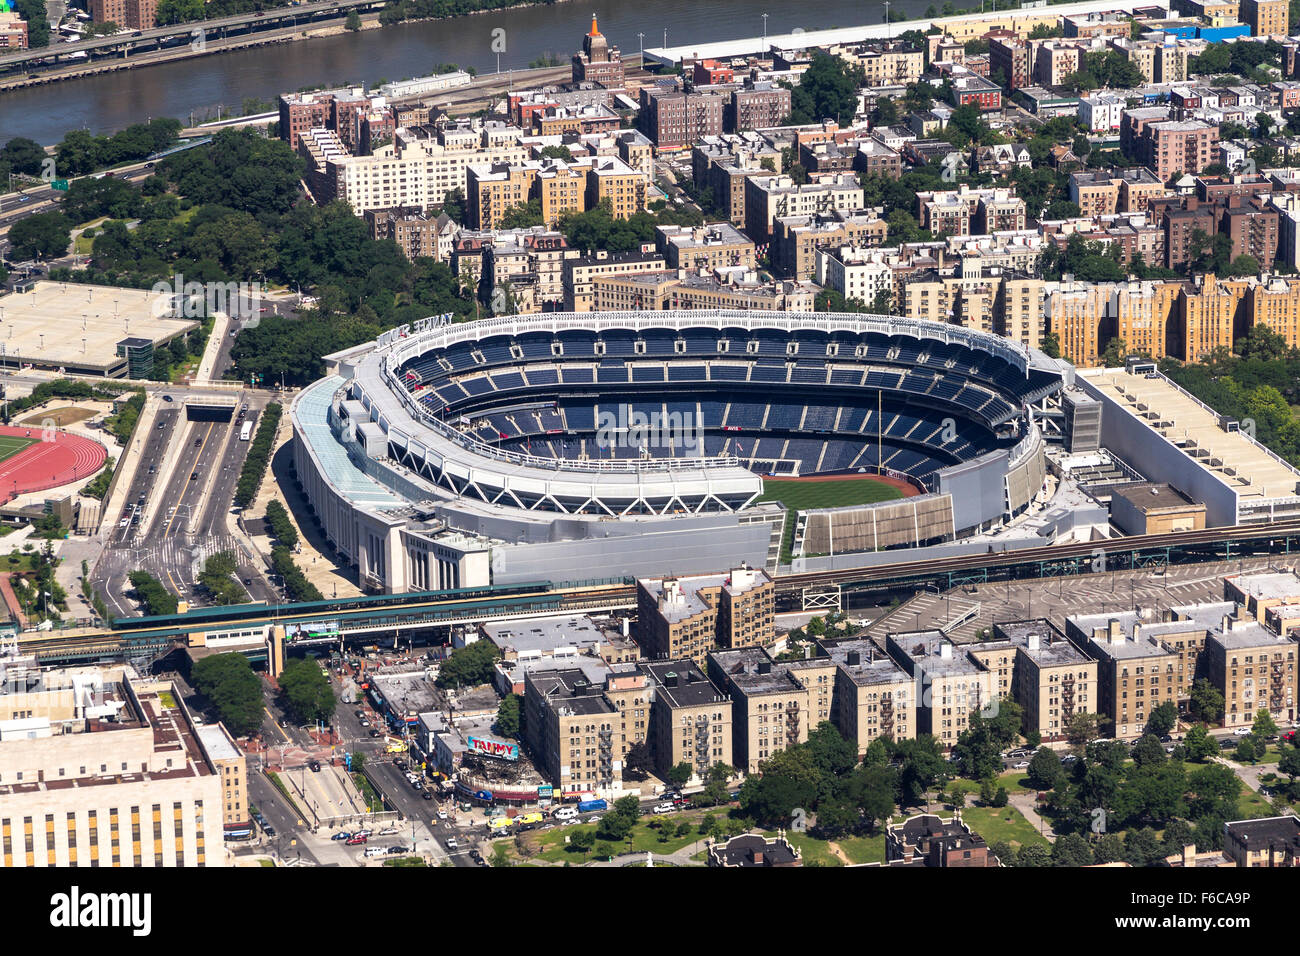 Yankee Stadium from above Stock Photo